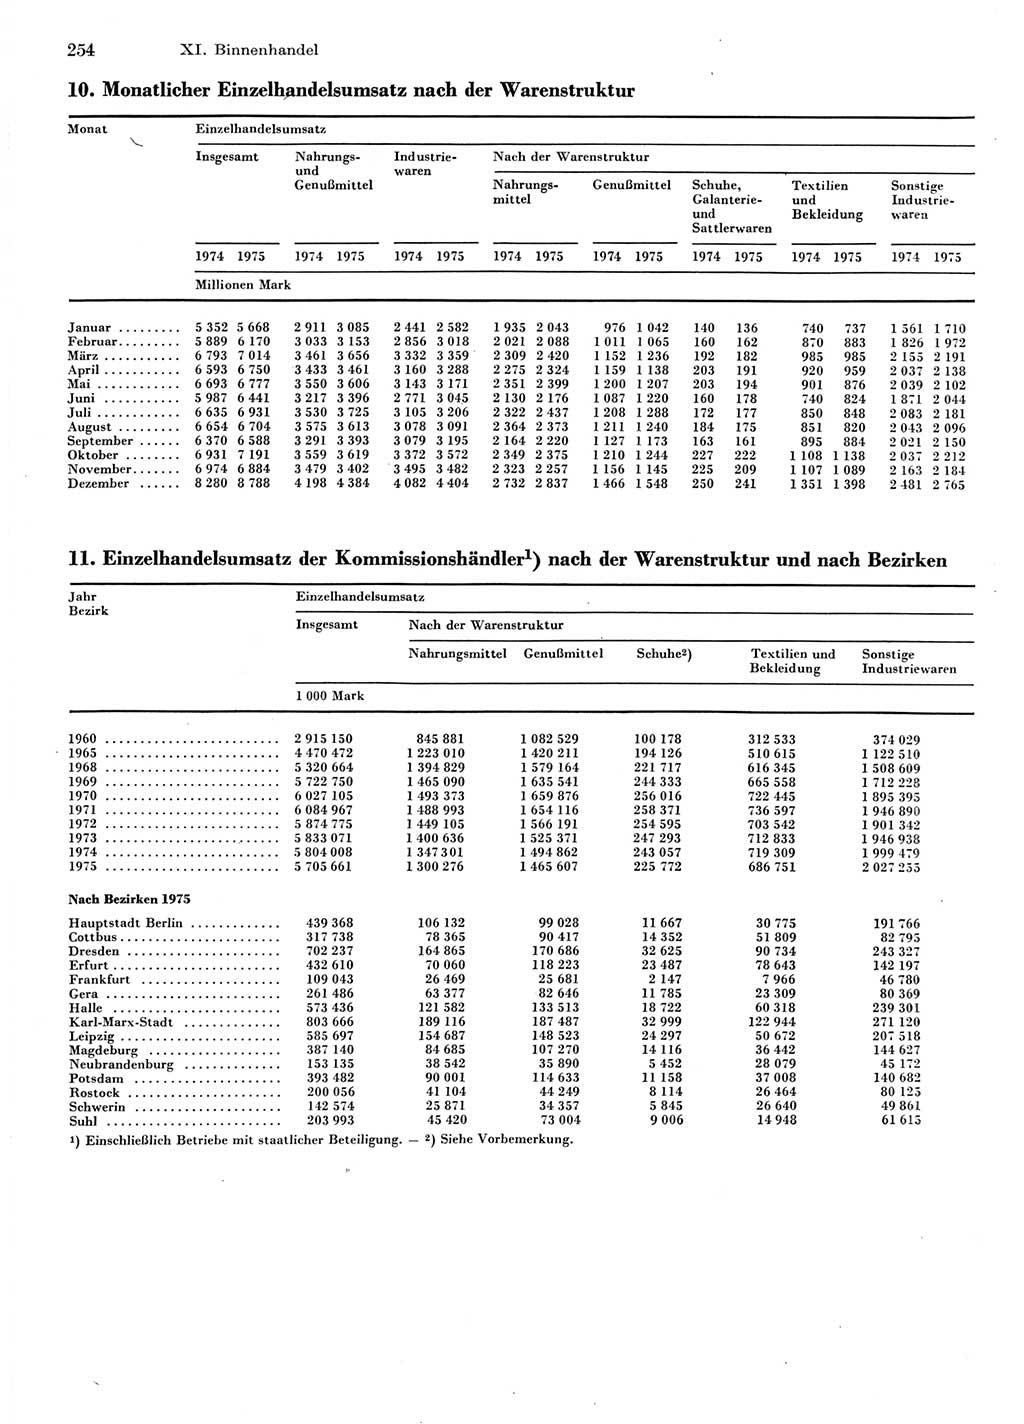 Statistisches Jahrbuch der Deutschen Demokratischen Republik (DDR) 1976, Seite 254 (Stat. Jb. DDR 1976, S. 254)